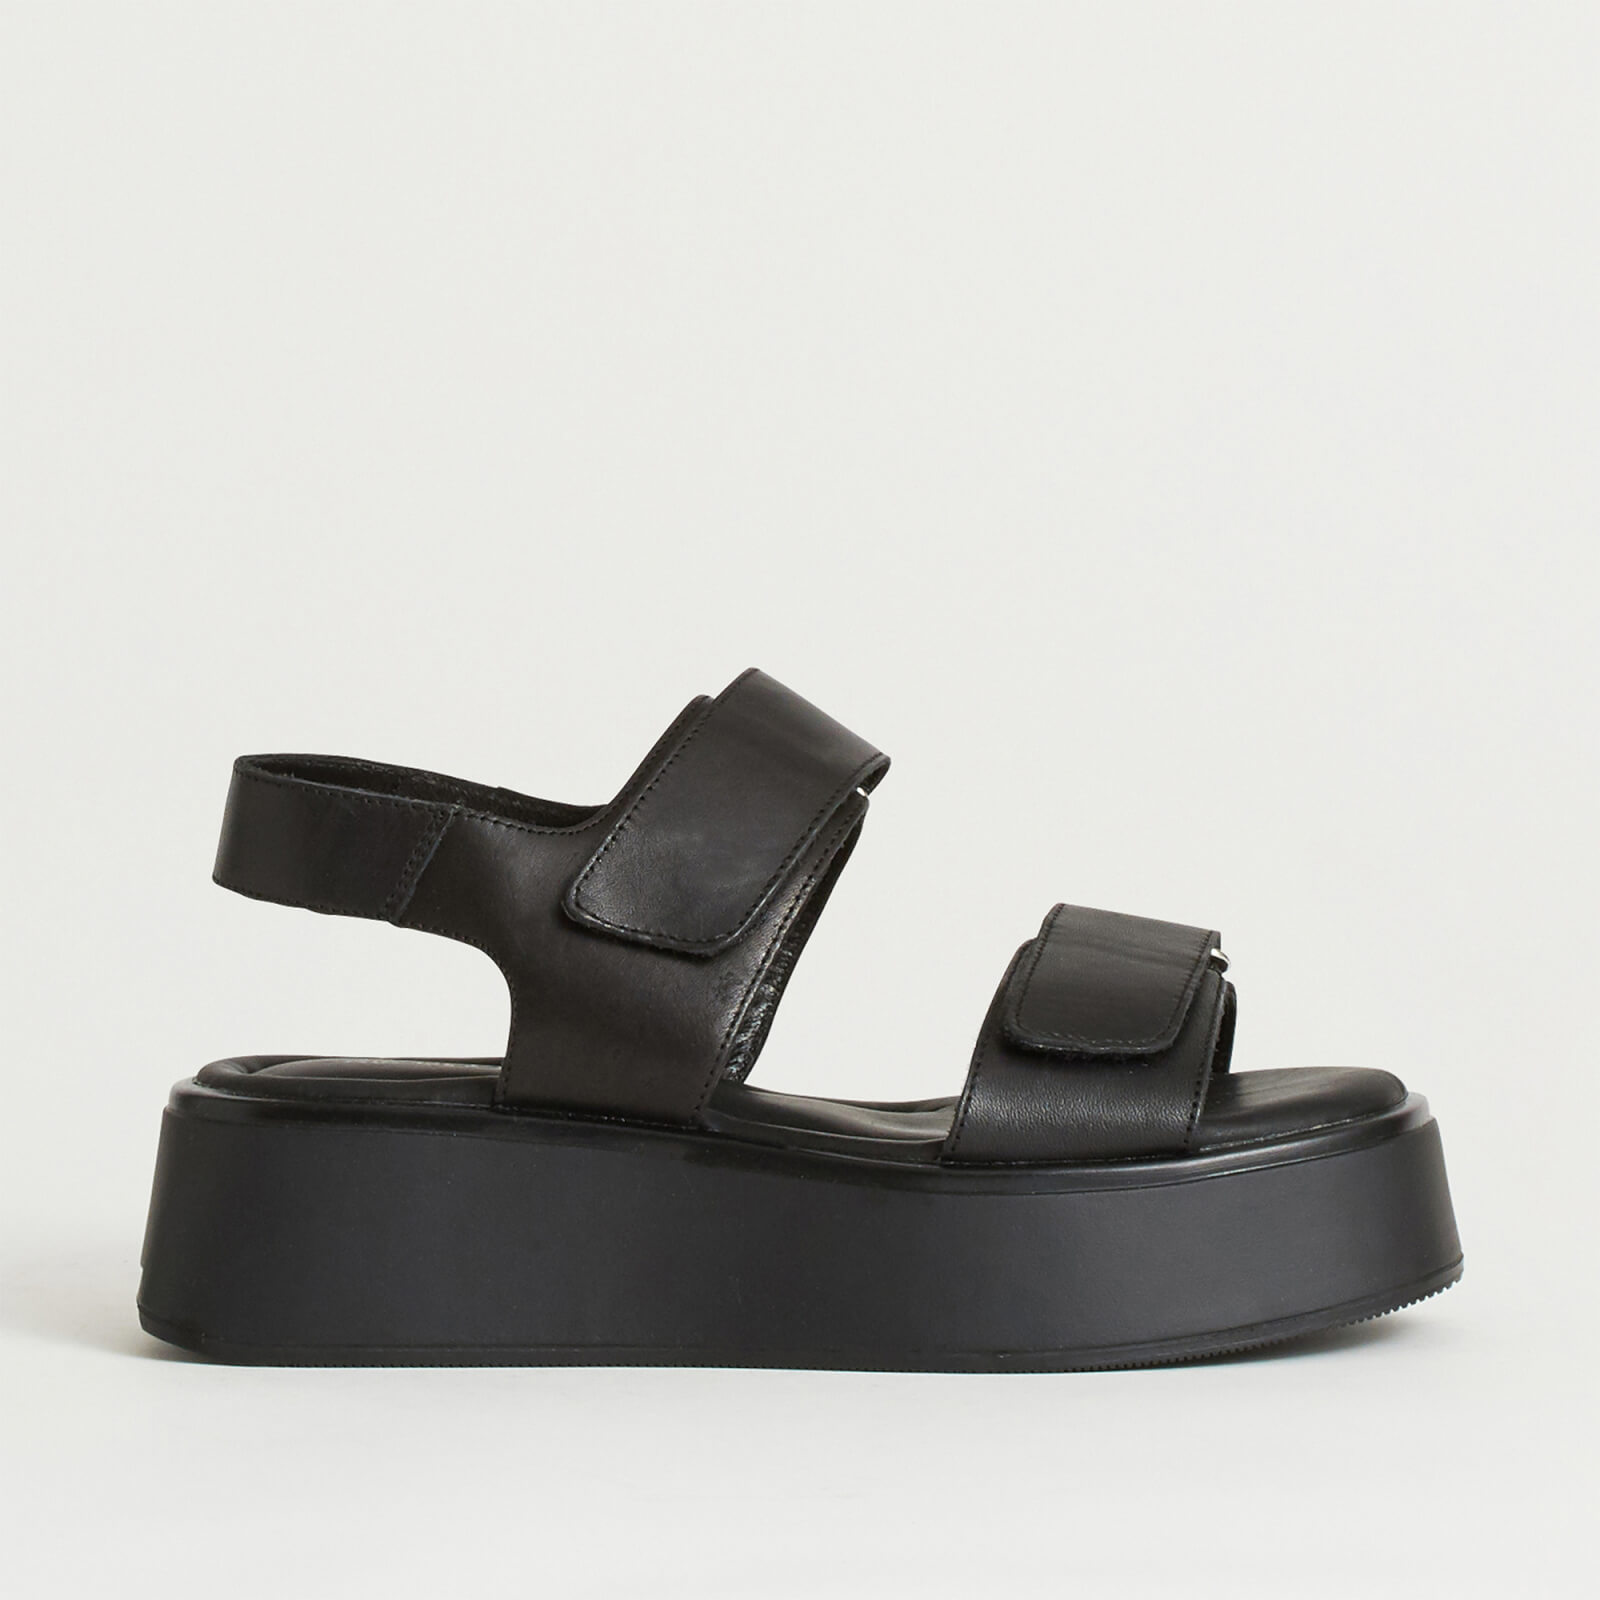 Vagabond Women’s Courtney Leather Double Strap Sandals - Black/Black